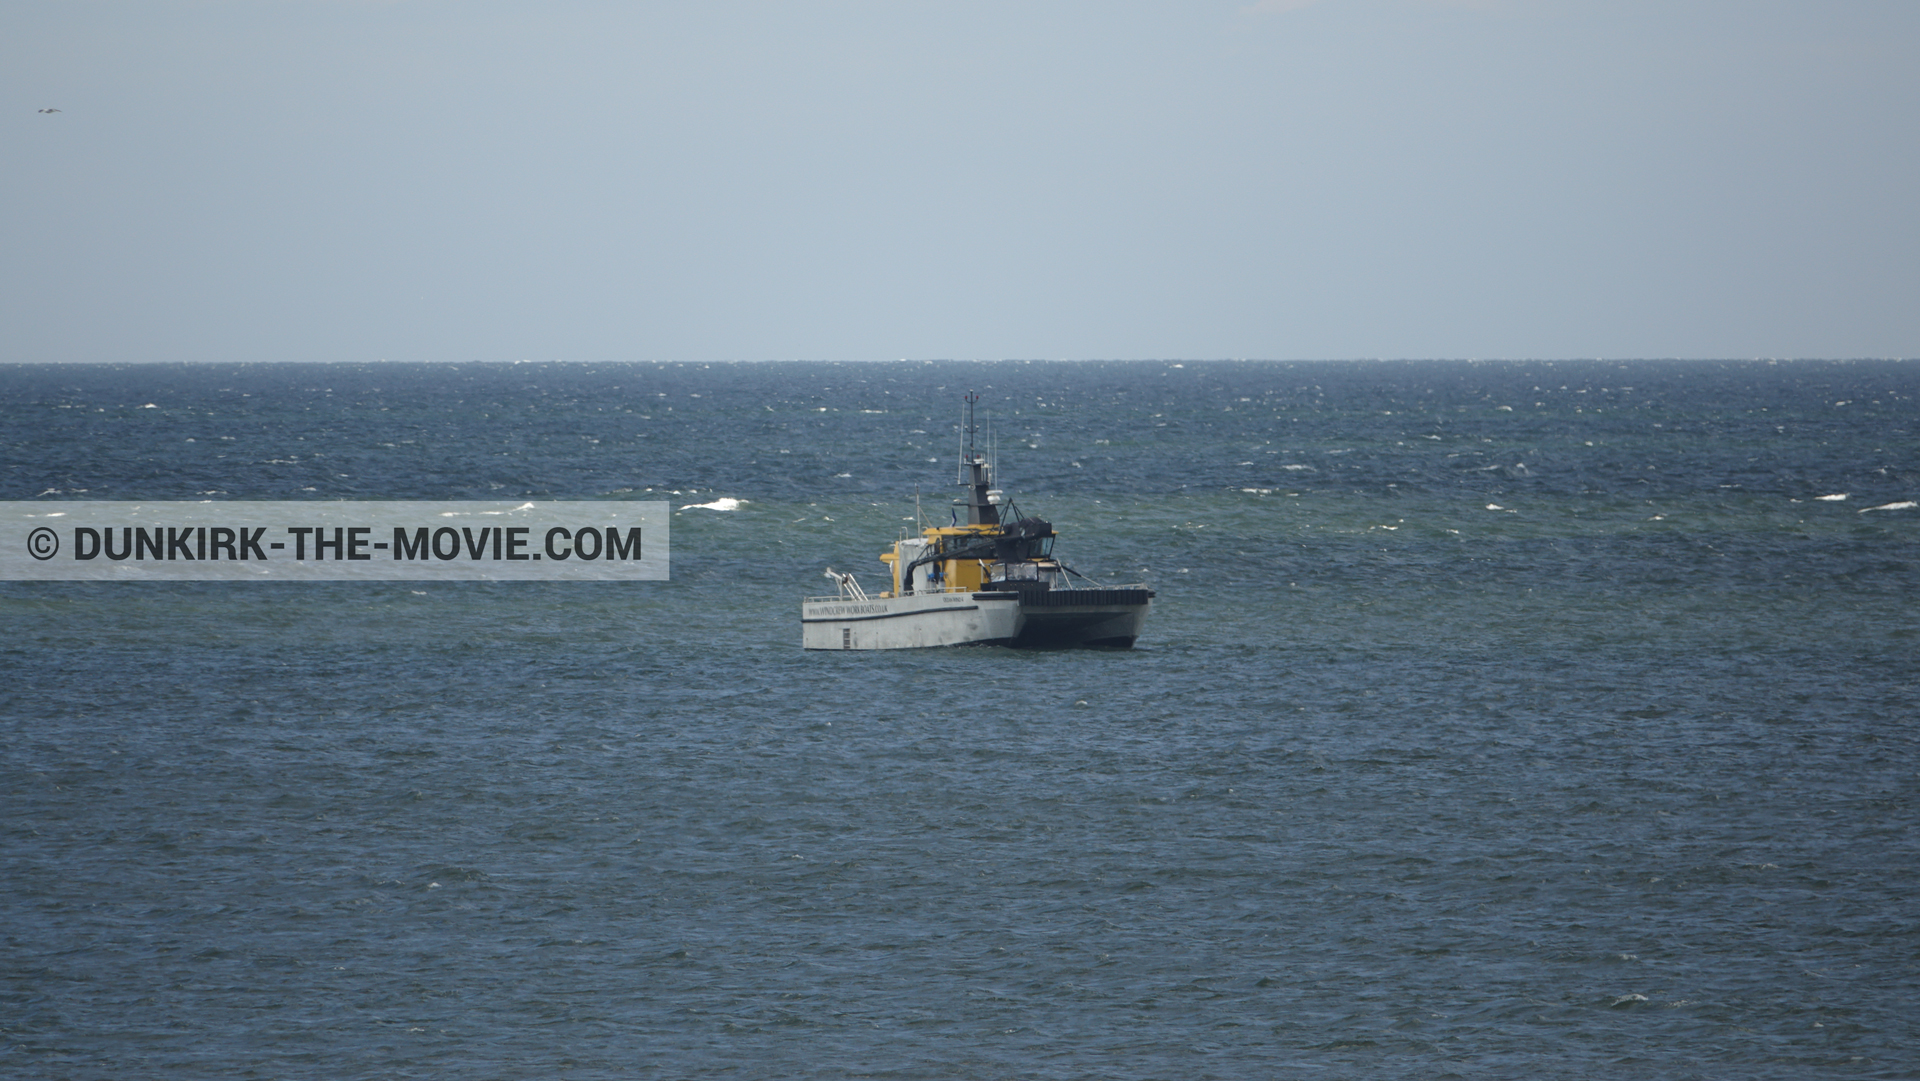 Fotos con Ocean Wind 4, mares calma, cielo azul,  durante el rodaje de la película Dunkerque de Nolan